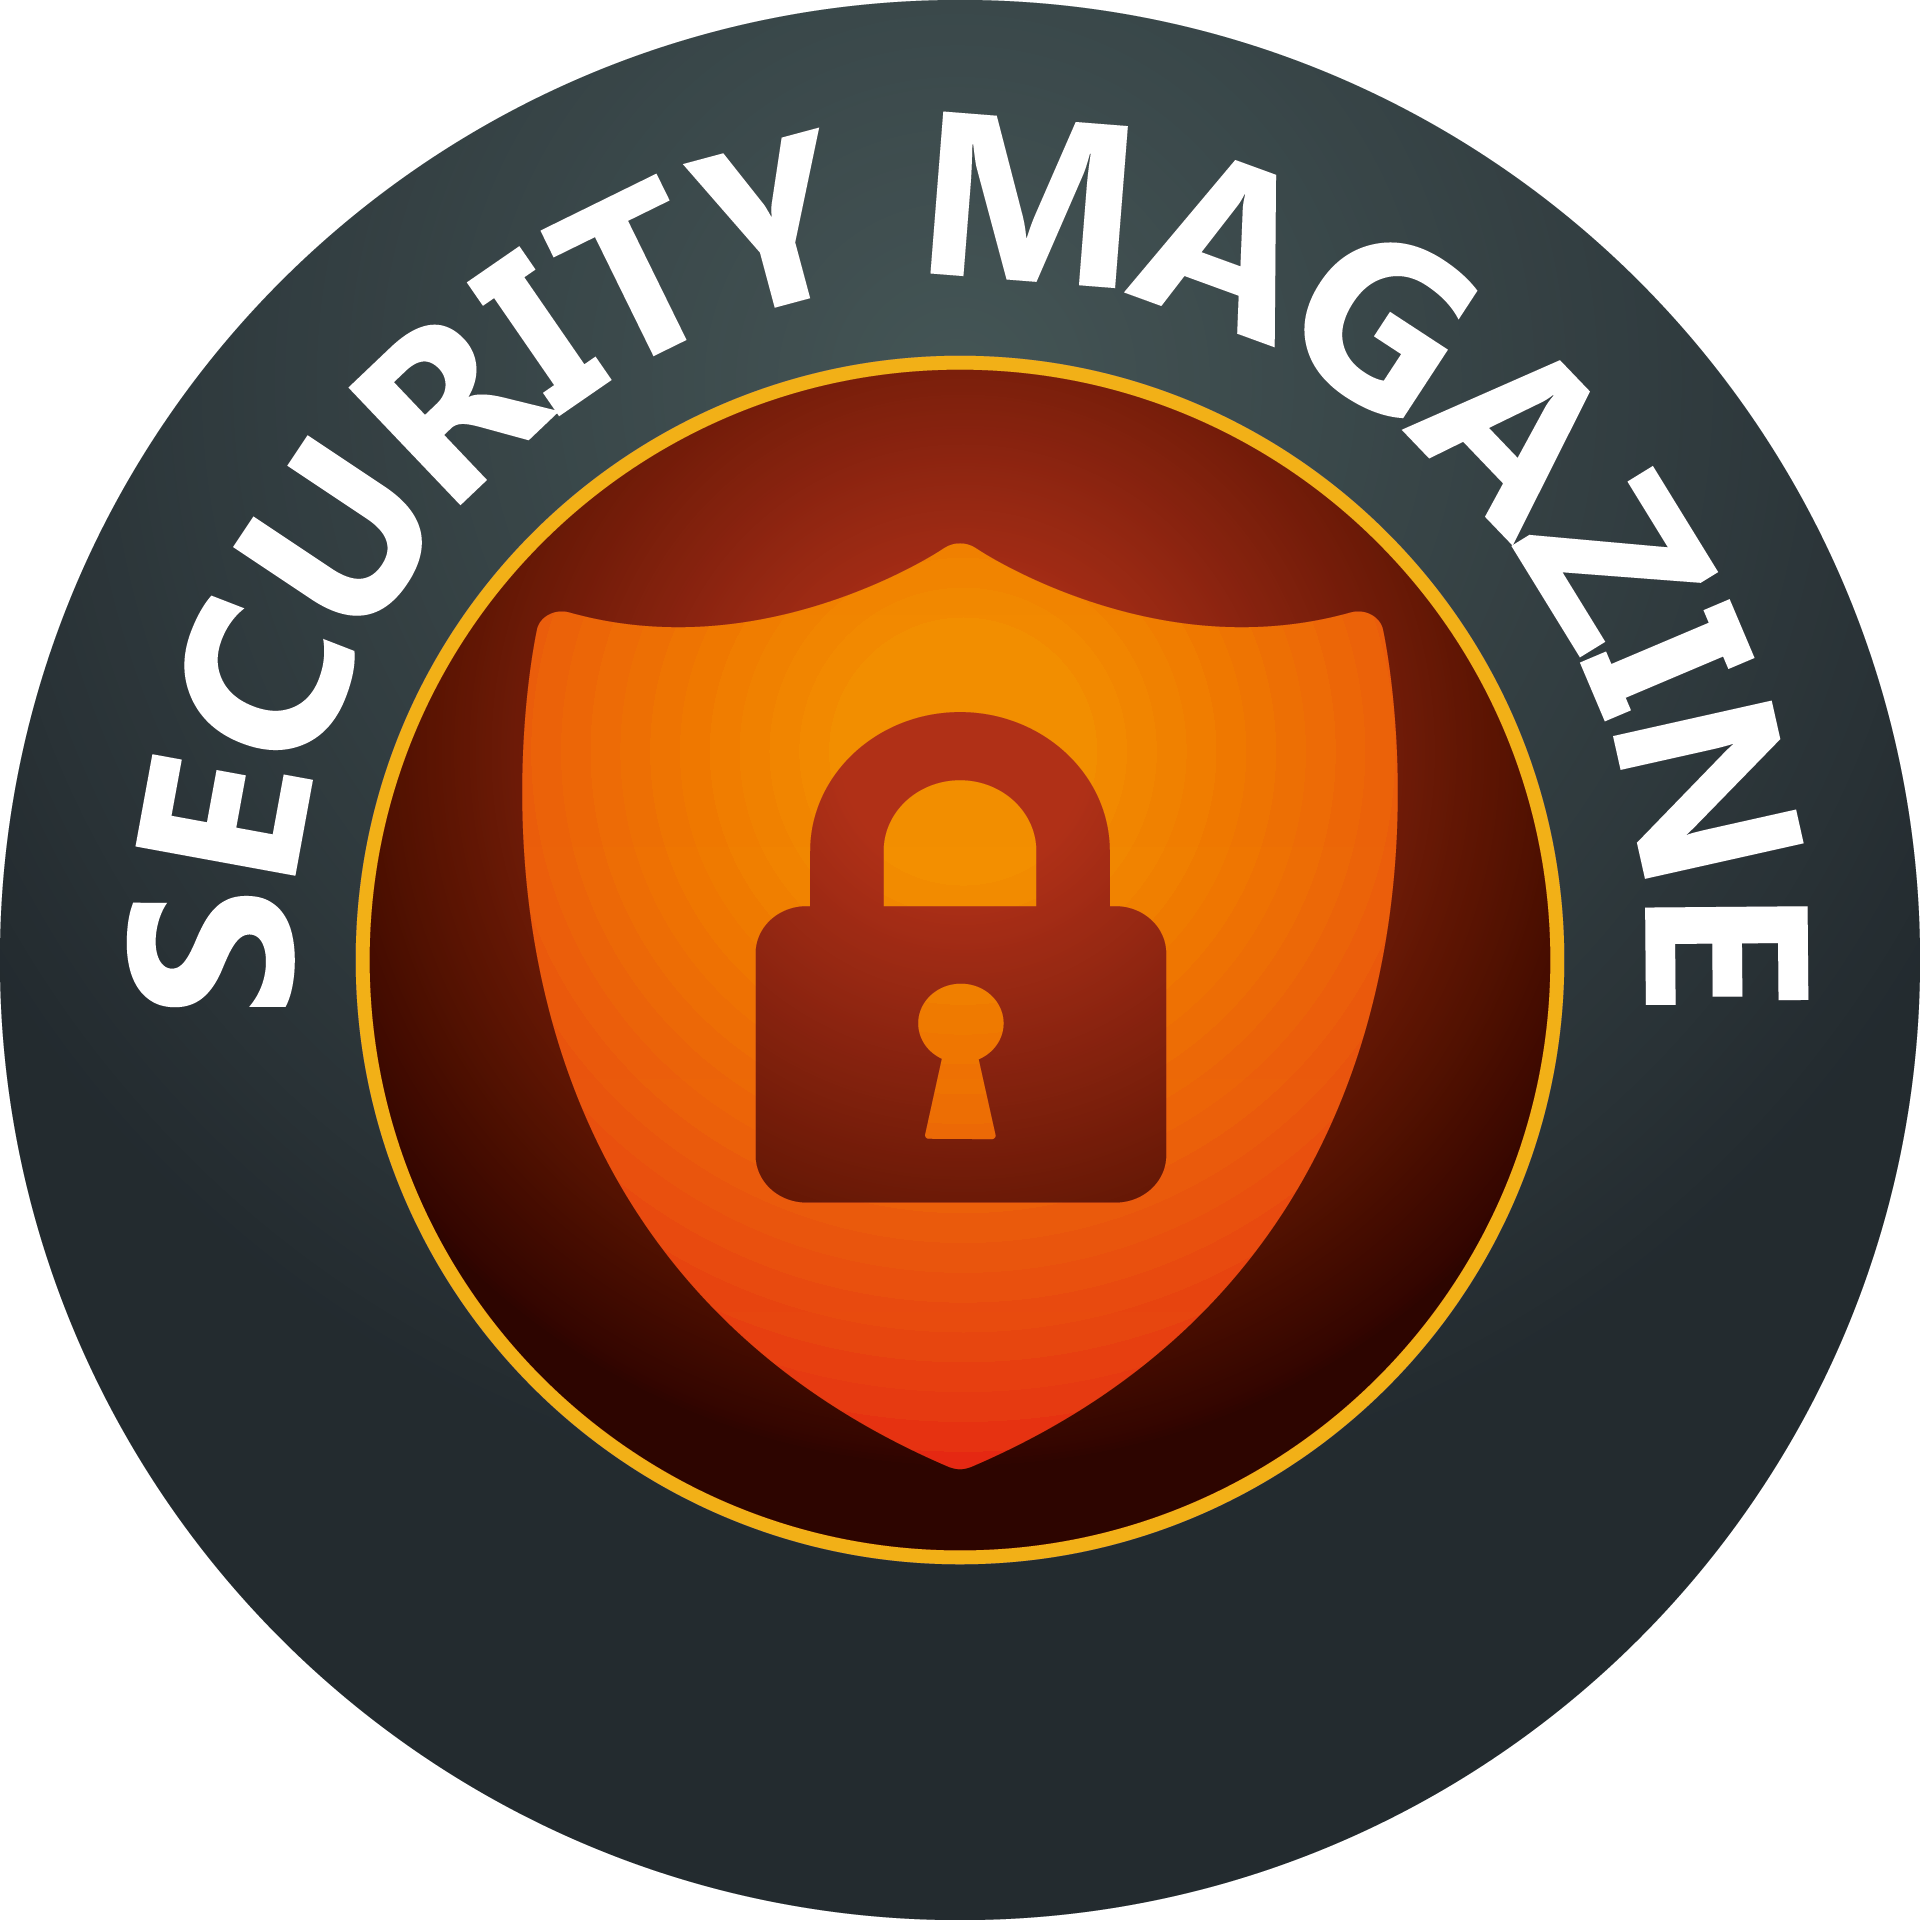 Security Magazine 